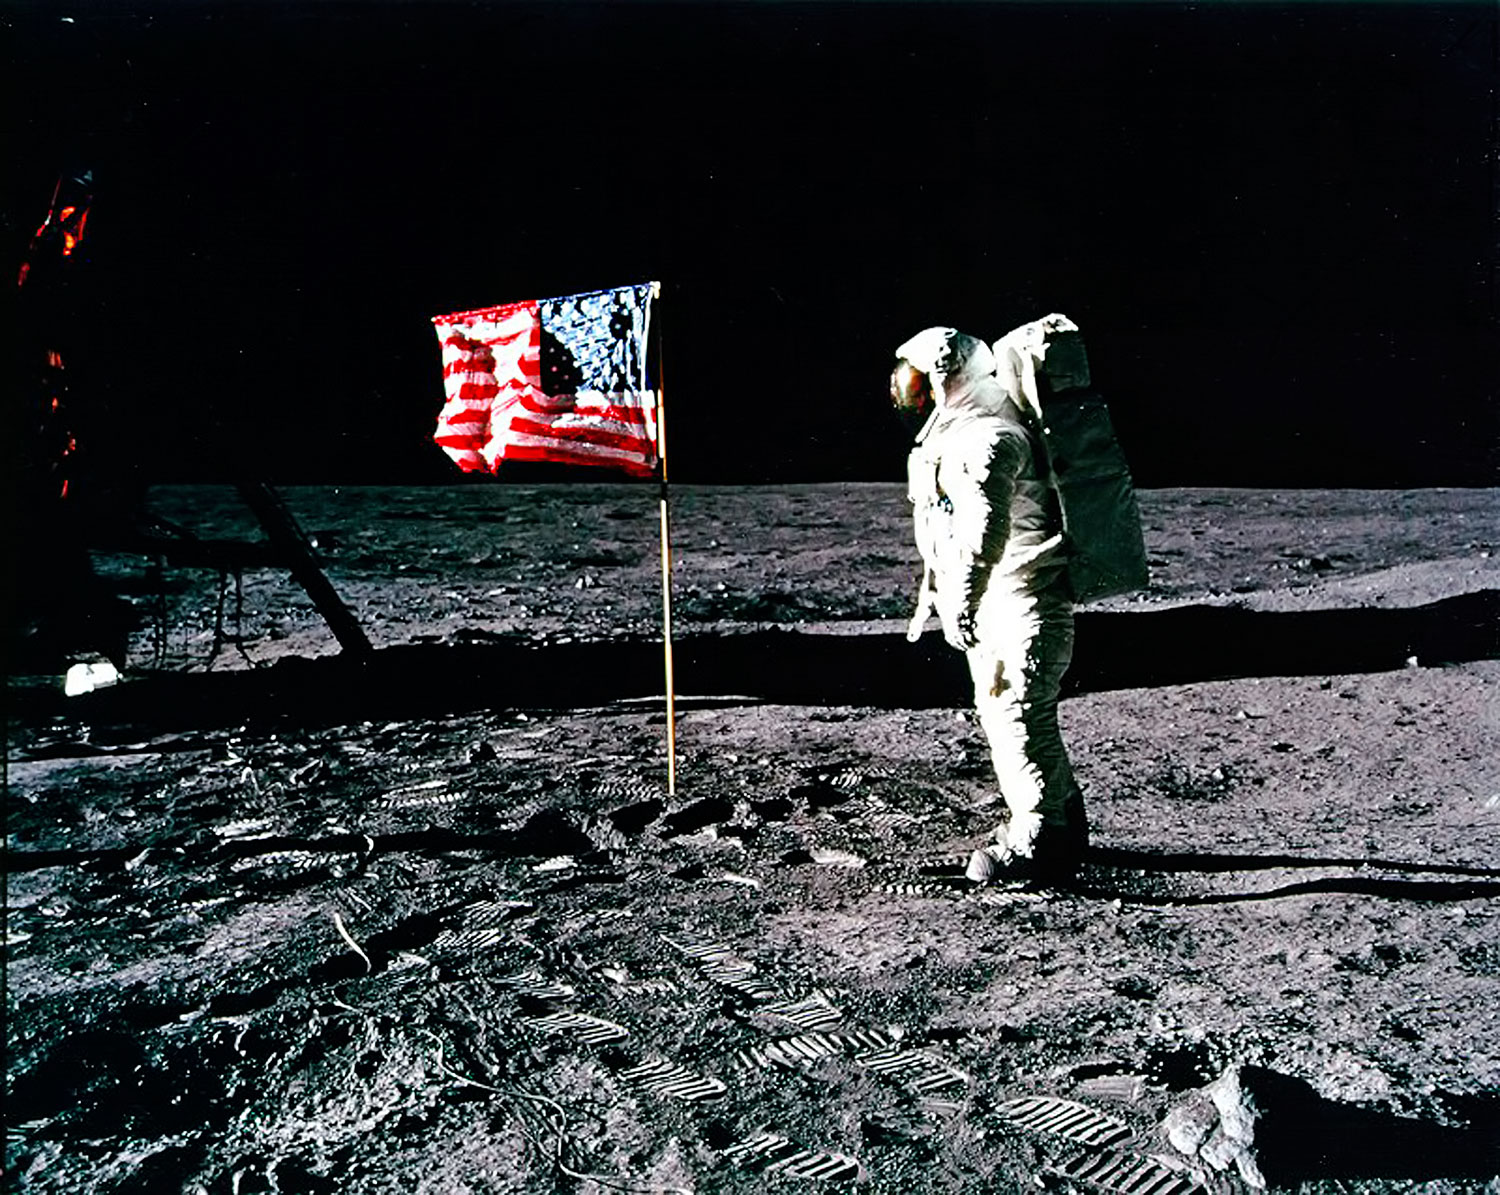 Az Apollo–11 űrhajósa, Buzz Aldrin tiszteleg az amerikai zászló előtt 1969. július 20-án